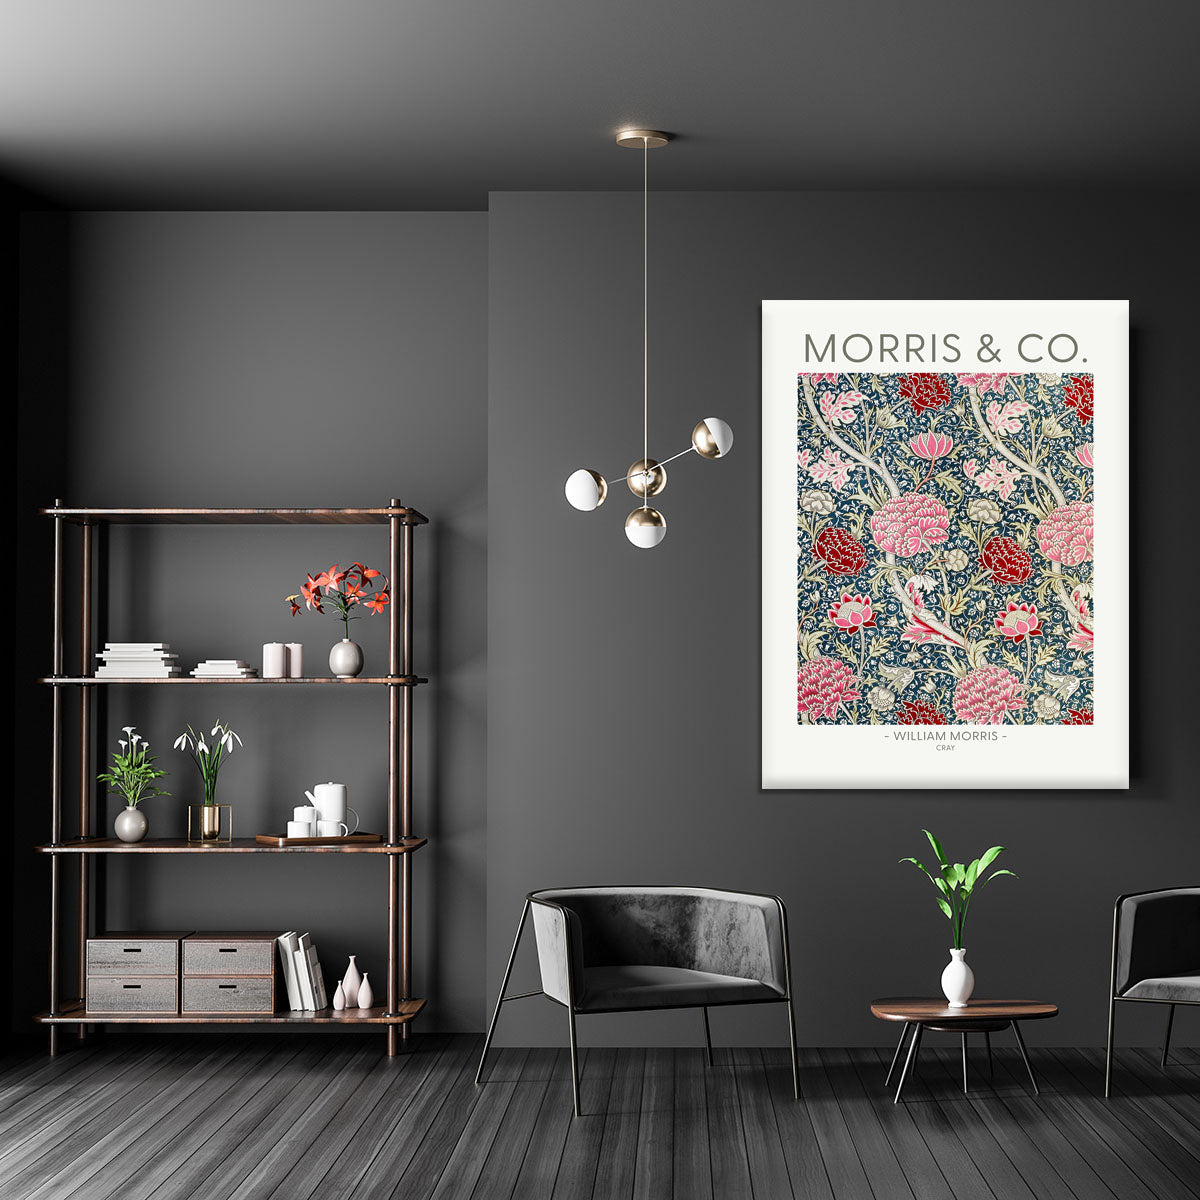 William Morris - The Cray Wallpaper